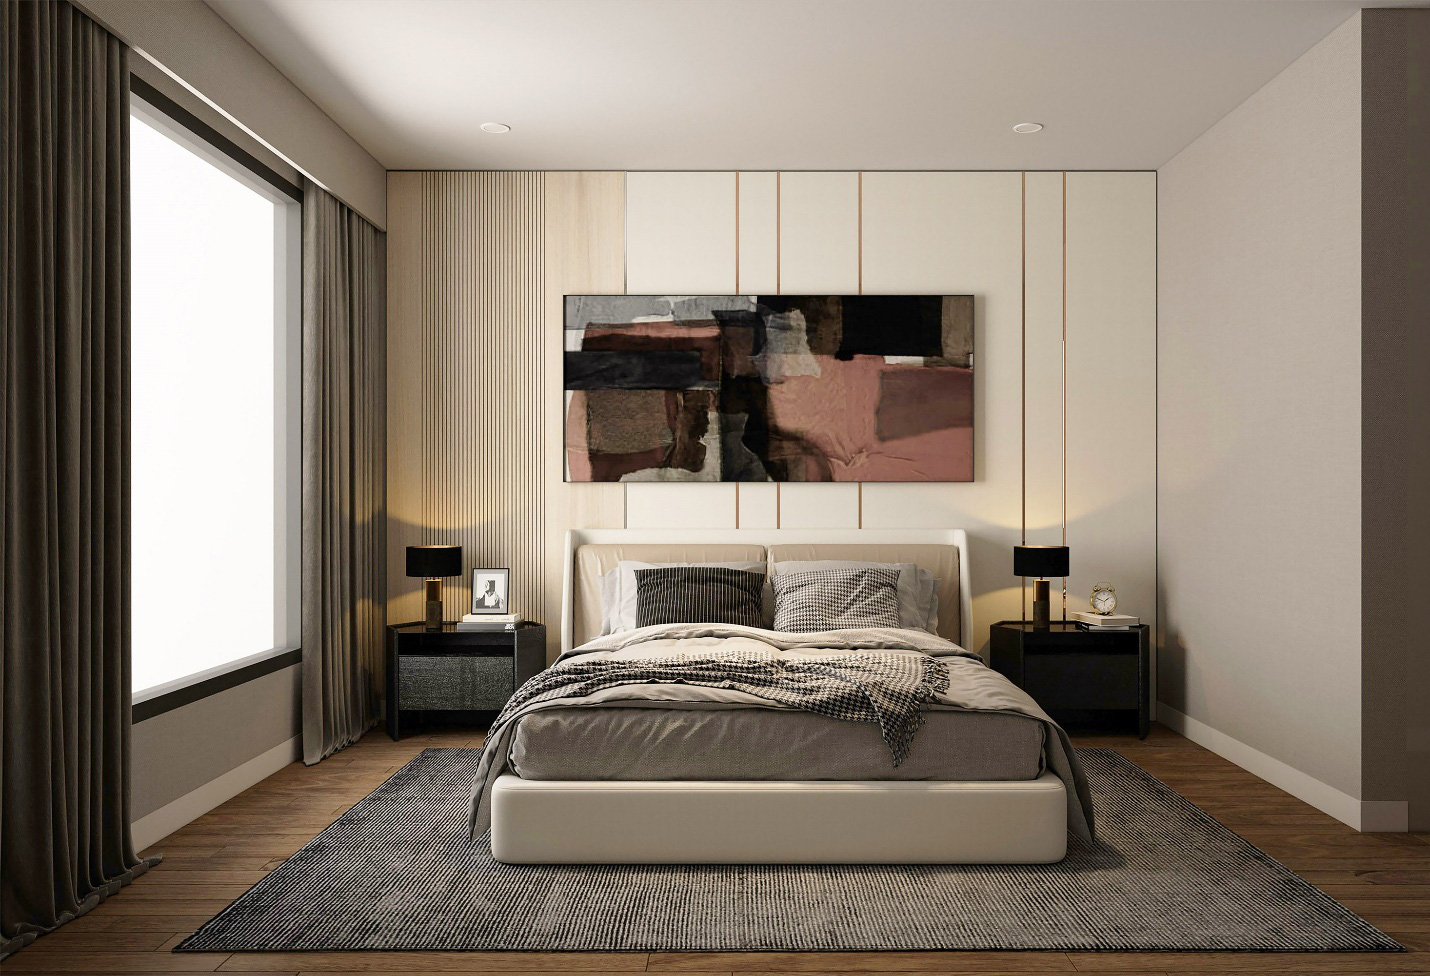 Thiết kế phòng ngủ đơn giản như vô cùng sạng trọng của dự án Imperia An Phú